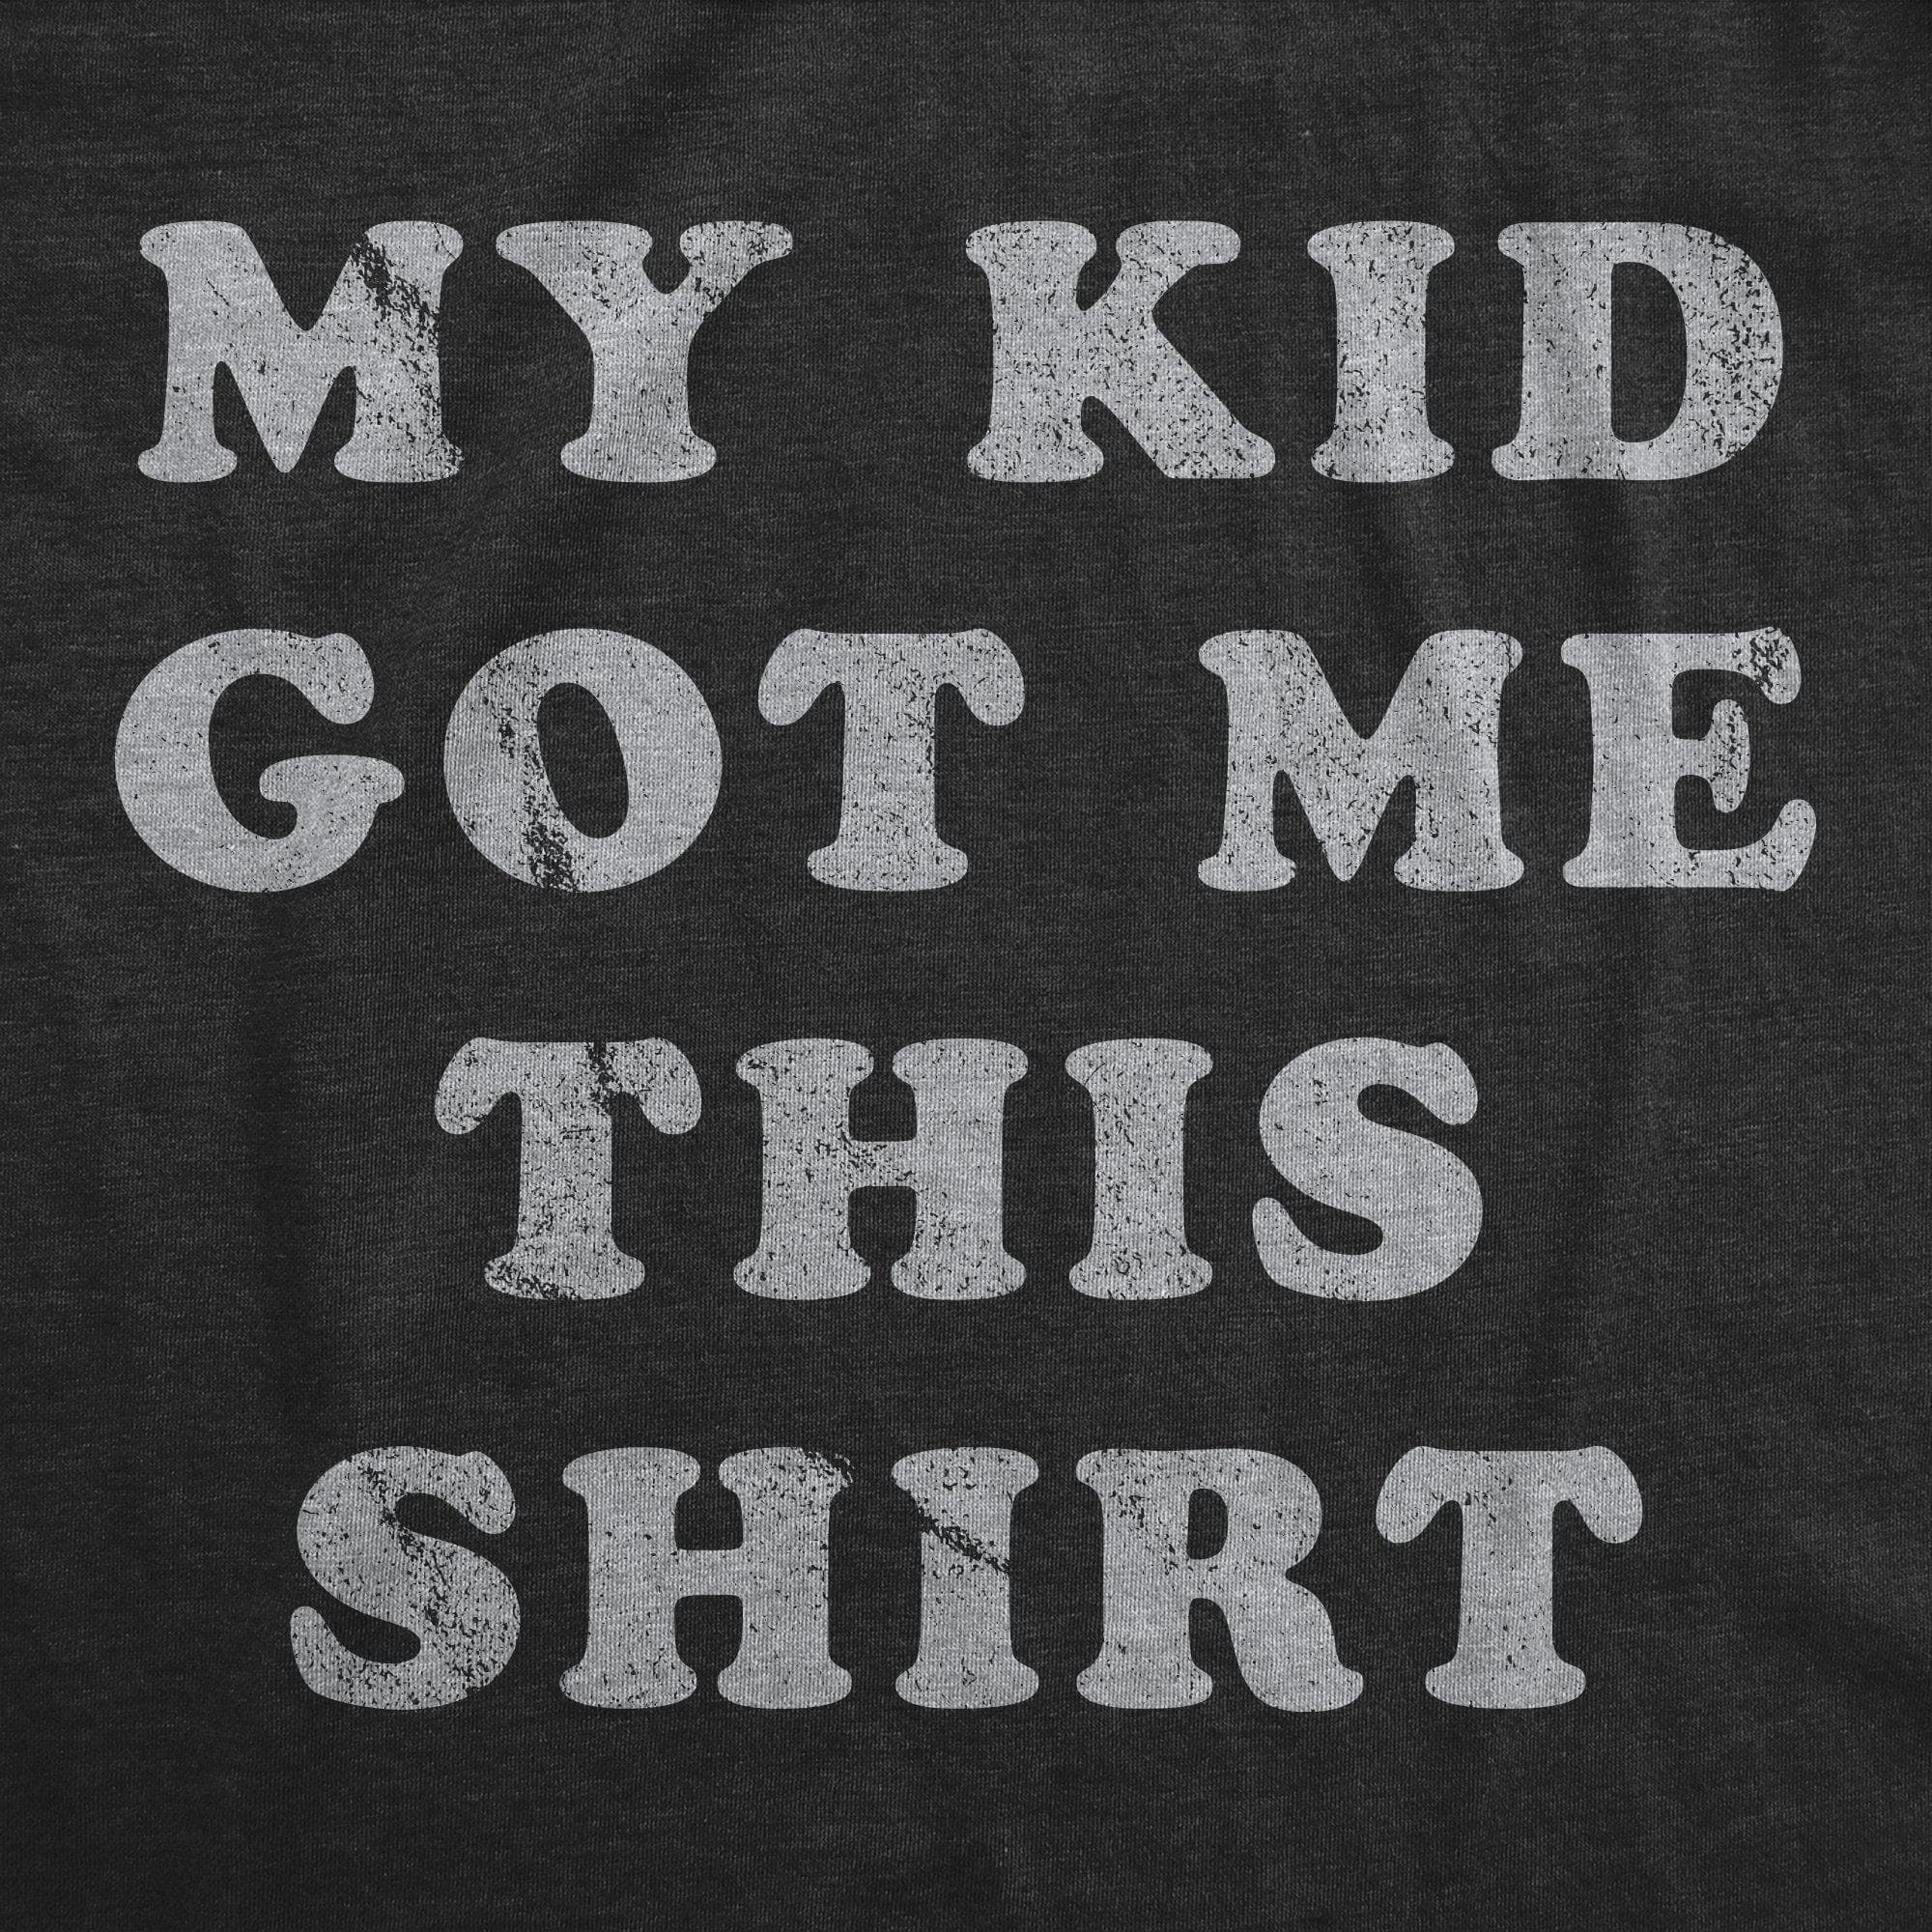 My Kid Got Me This Shirt Men's Tshirt - Crazy Dog T-Shirts